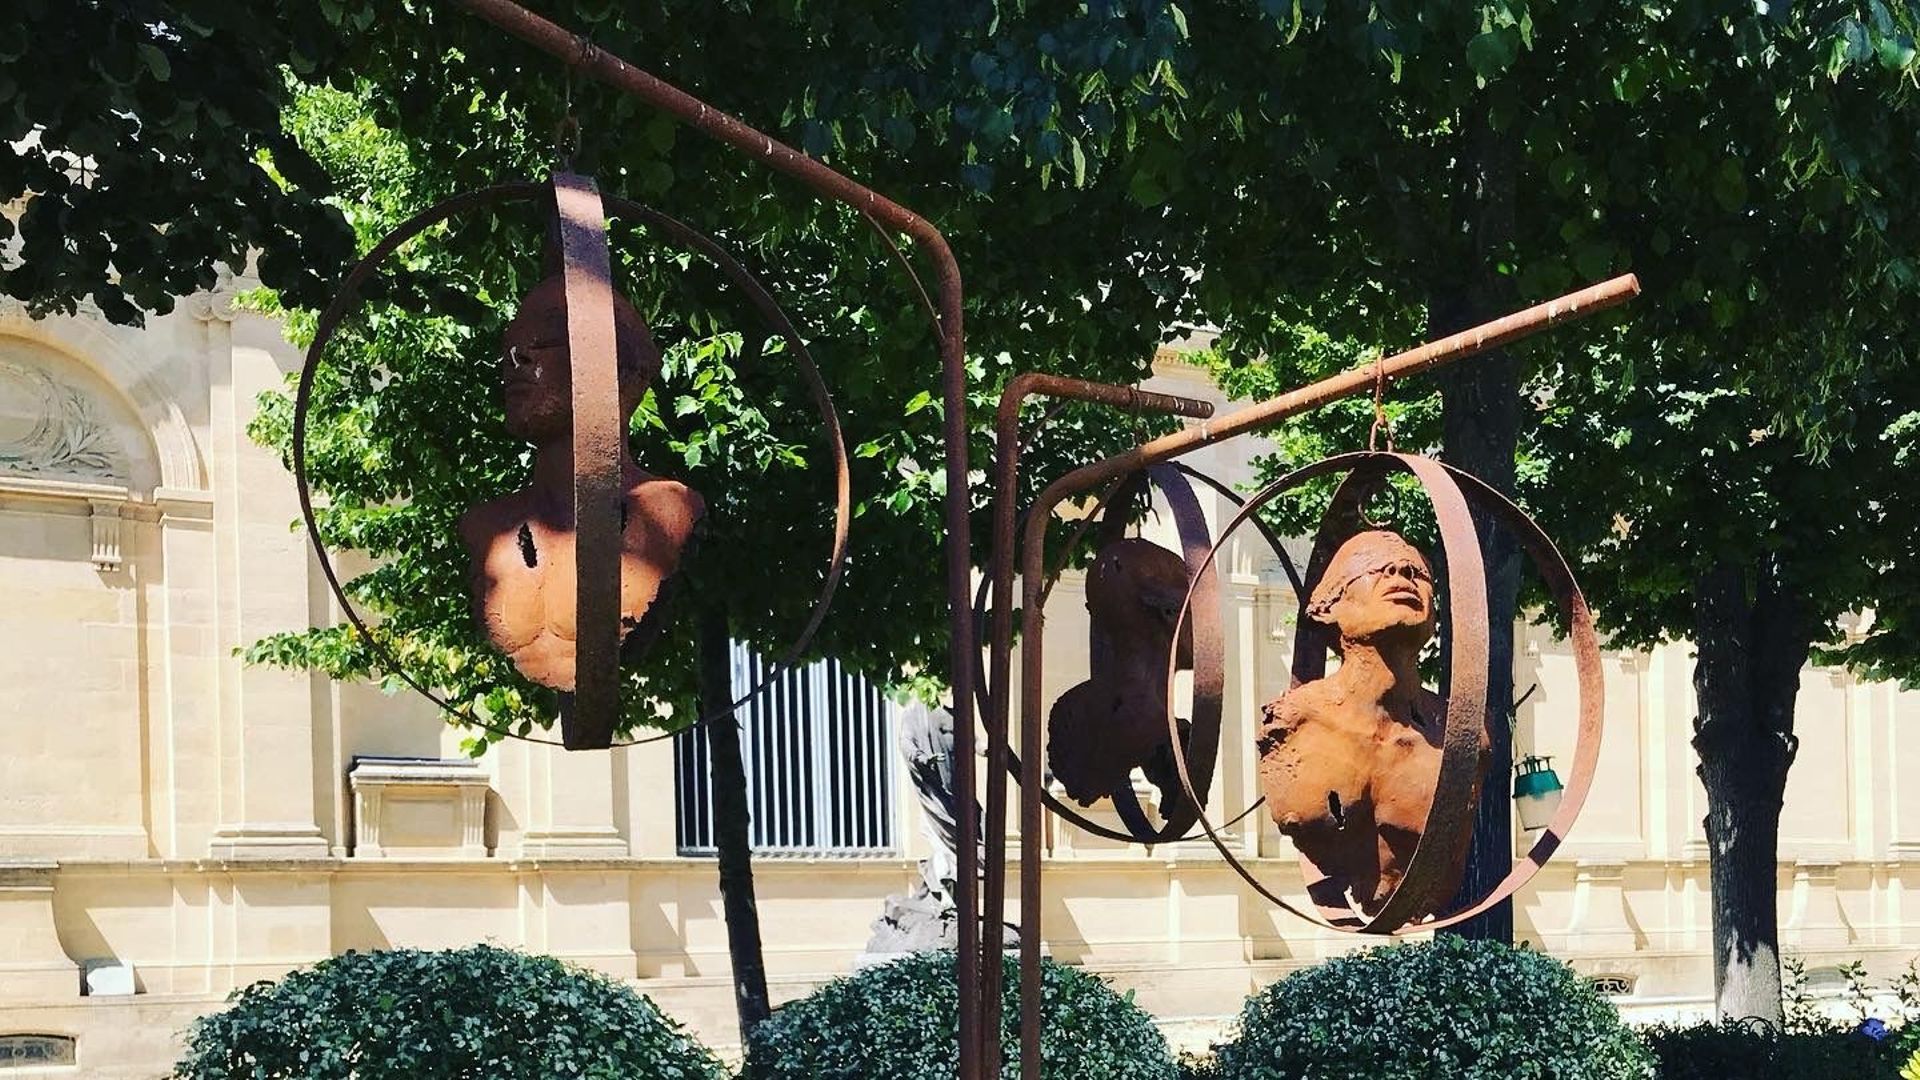 Sculpture de l'artiste réunionnaise Sandrine Plante-Rougeol, dans les jardins de l'hôtel de ville de Bordeaux